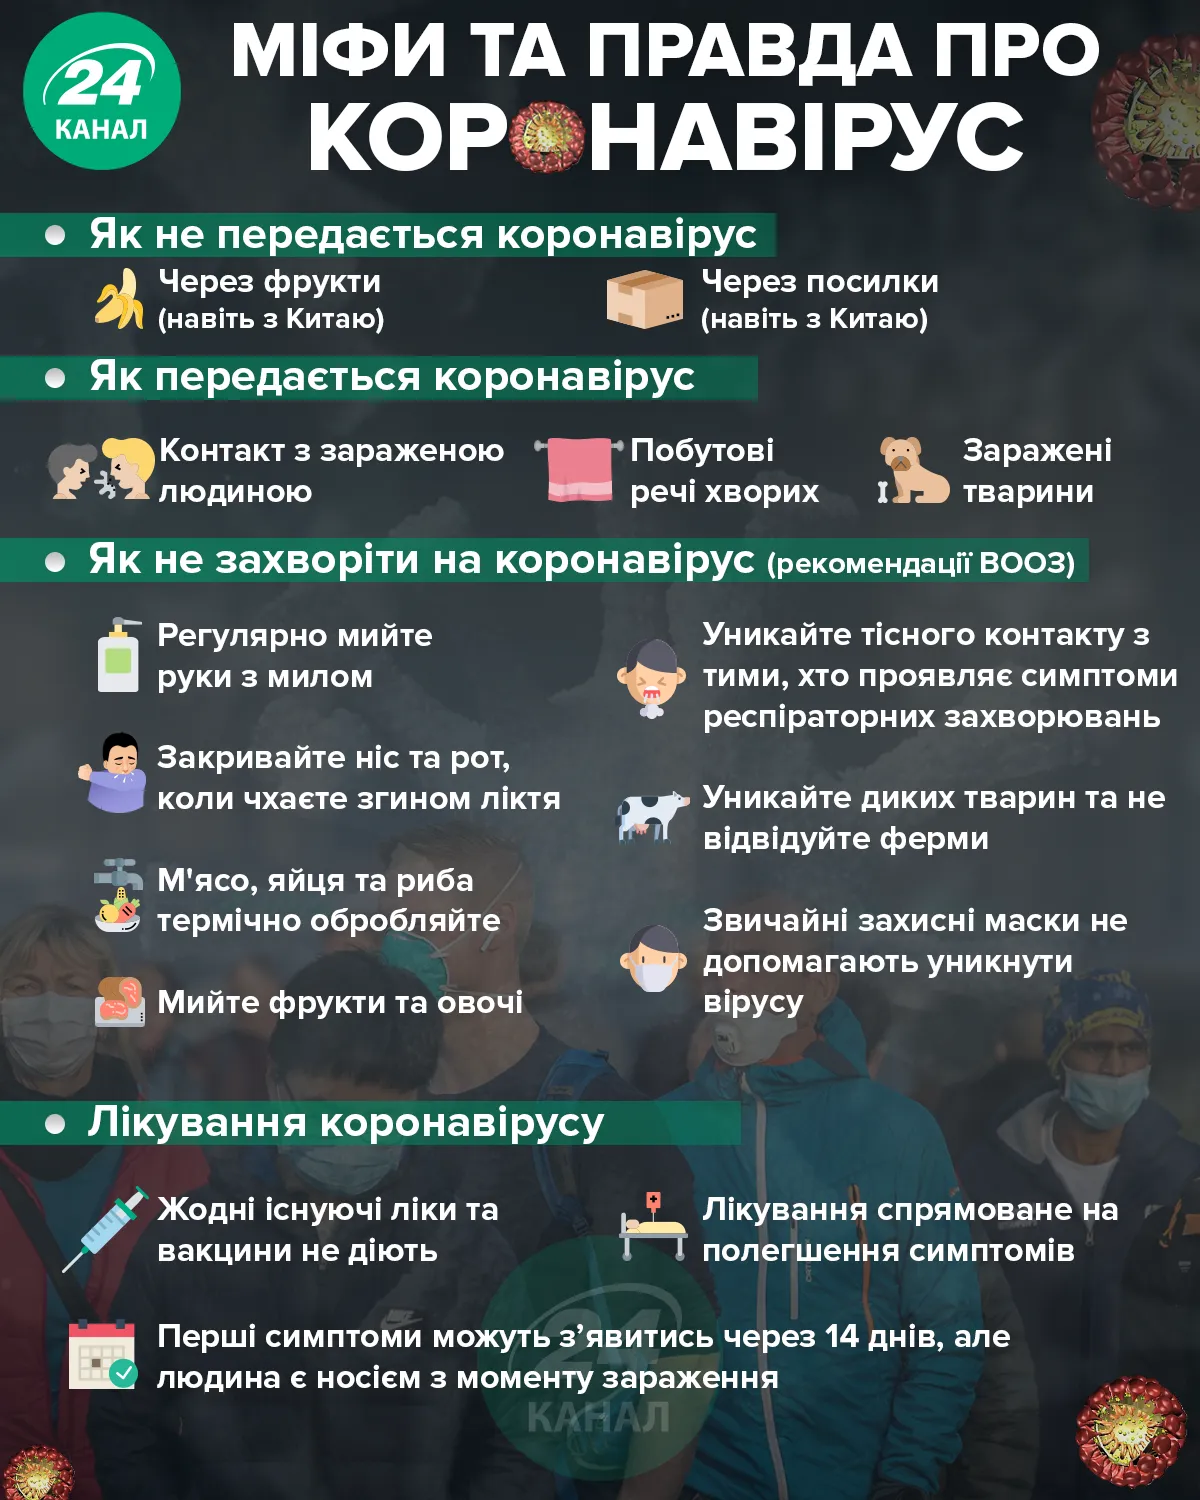 Правда та міфи про коронавірус / 24 канал